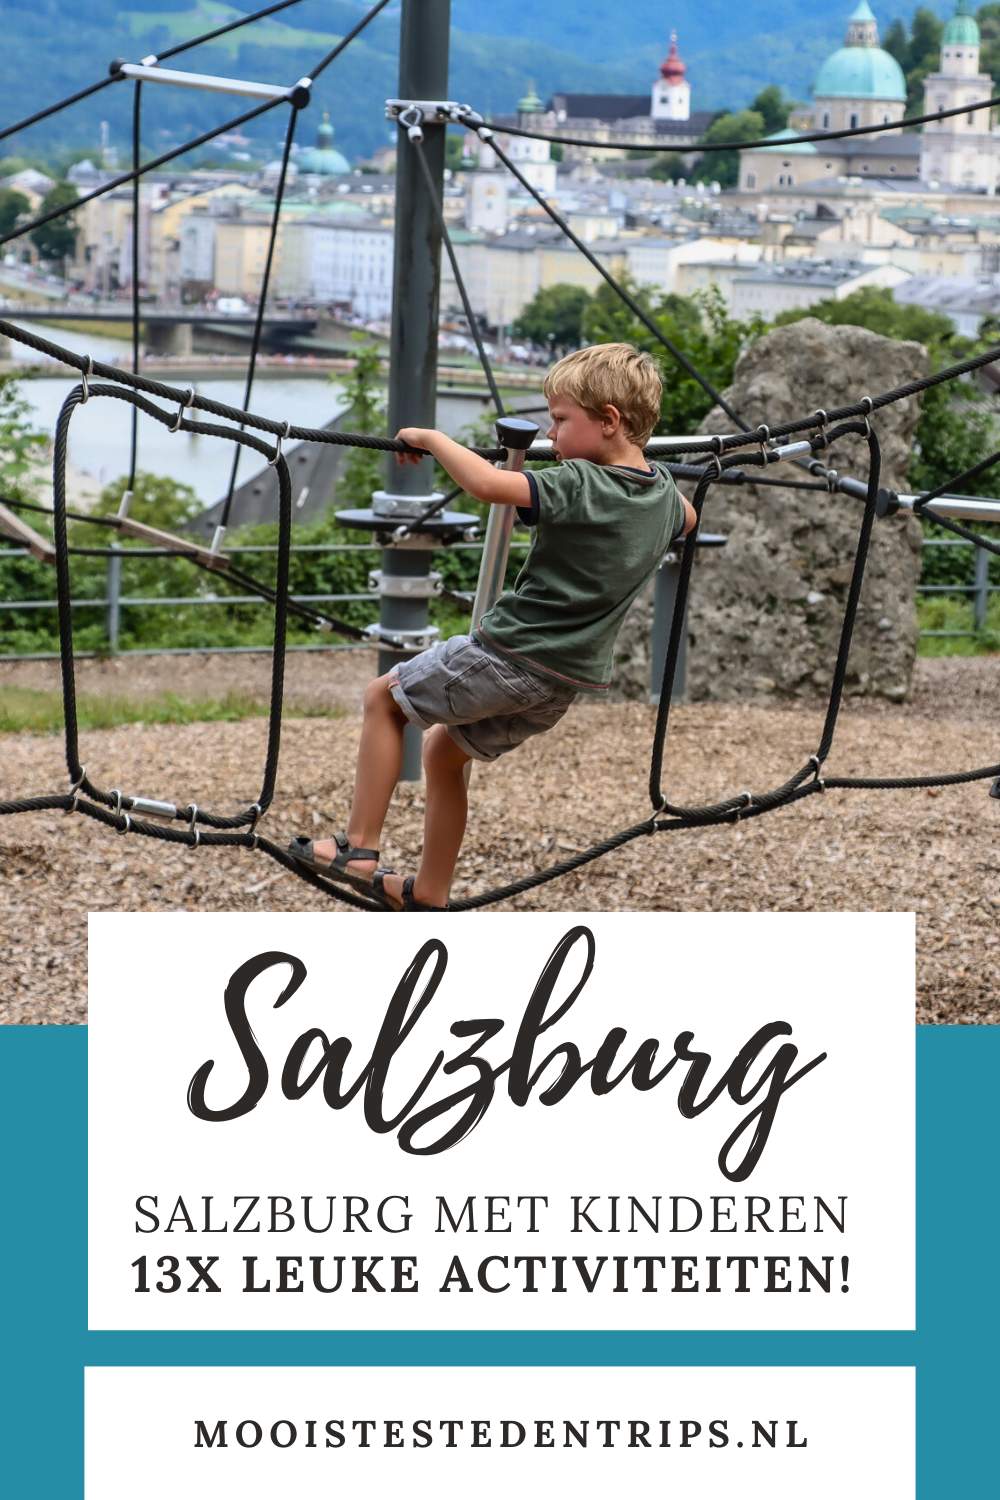 Salzburg met kinderen: de leukste dingen om te doen in Salzburg met kinderen | Mooistestedentrips.nl